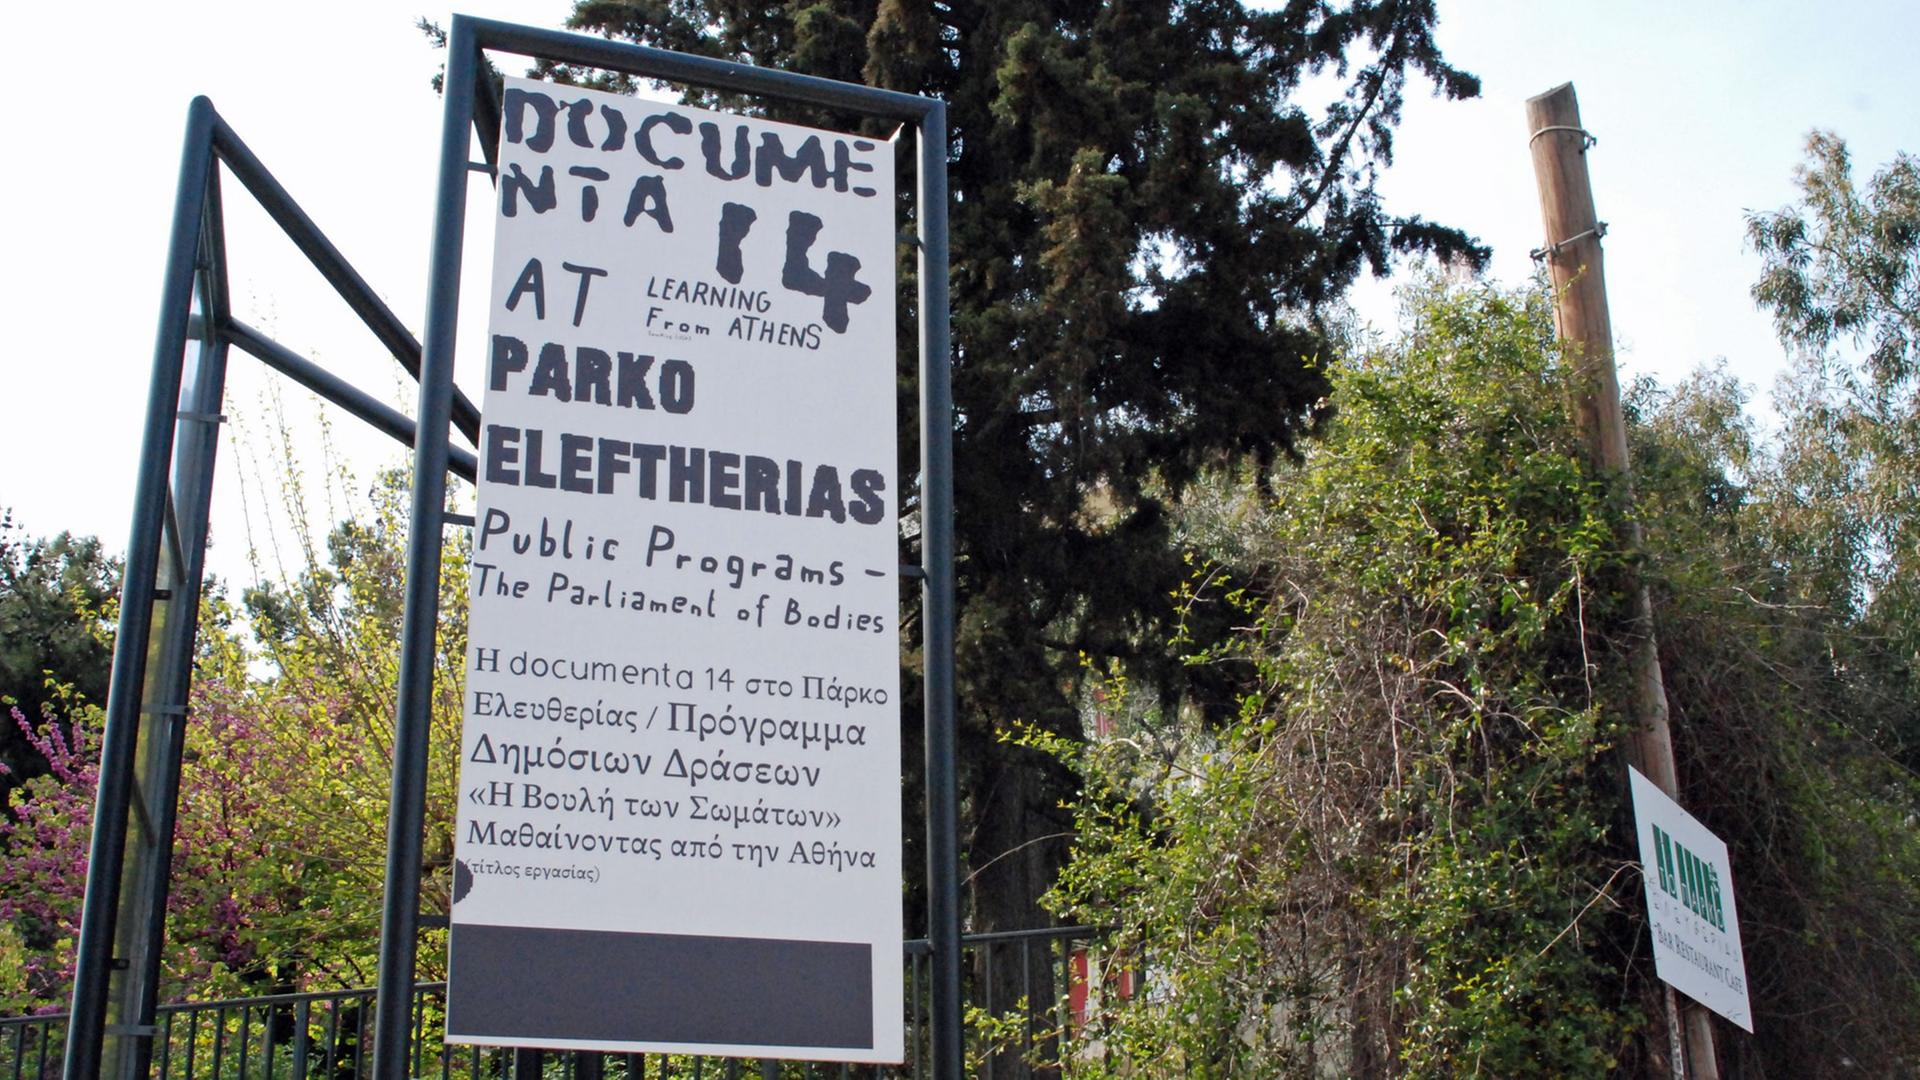 Ein Werbe-Plakat für die documenta hängt am Zaun von einem Park in Athen.